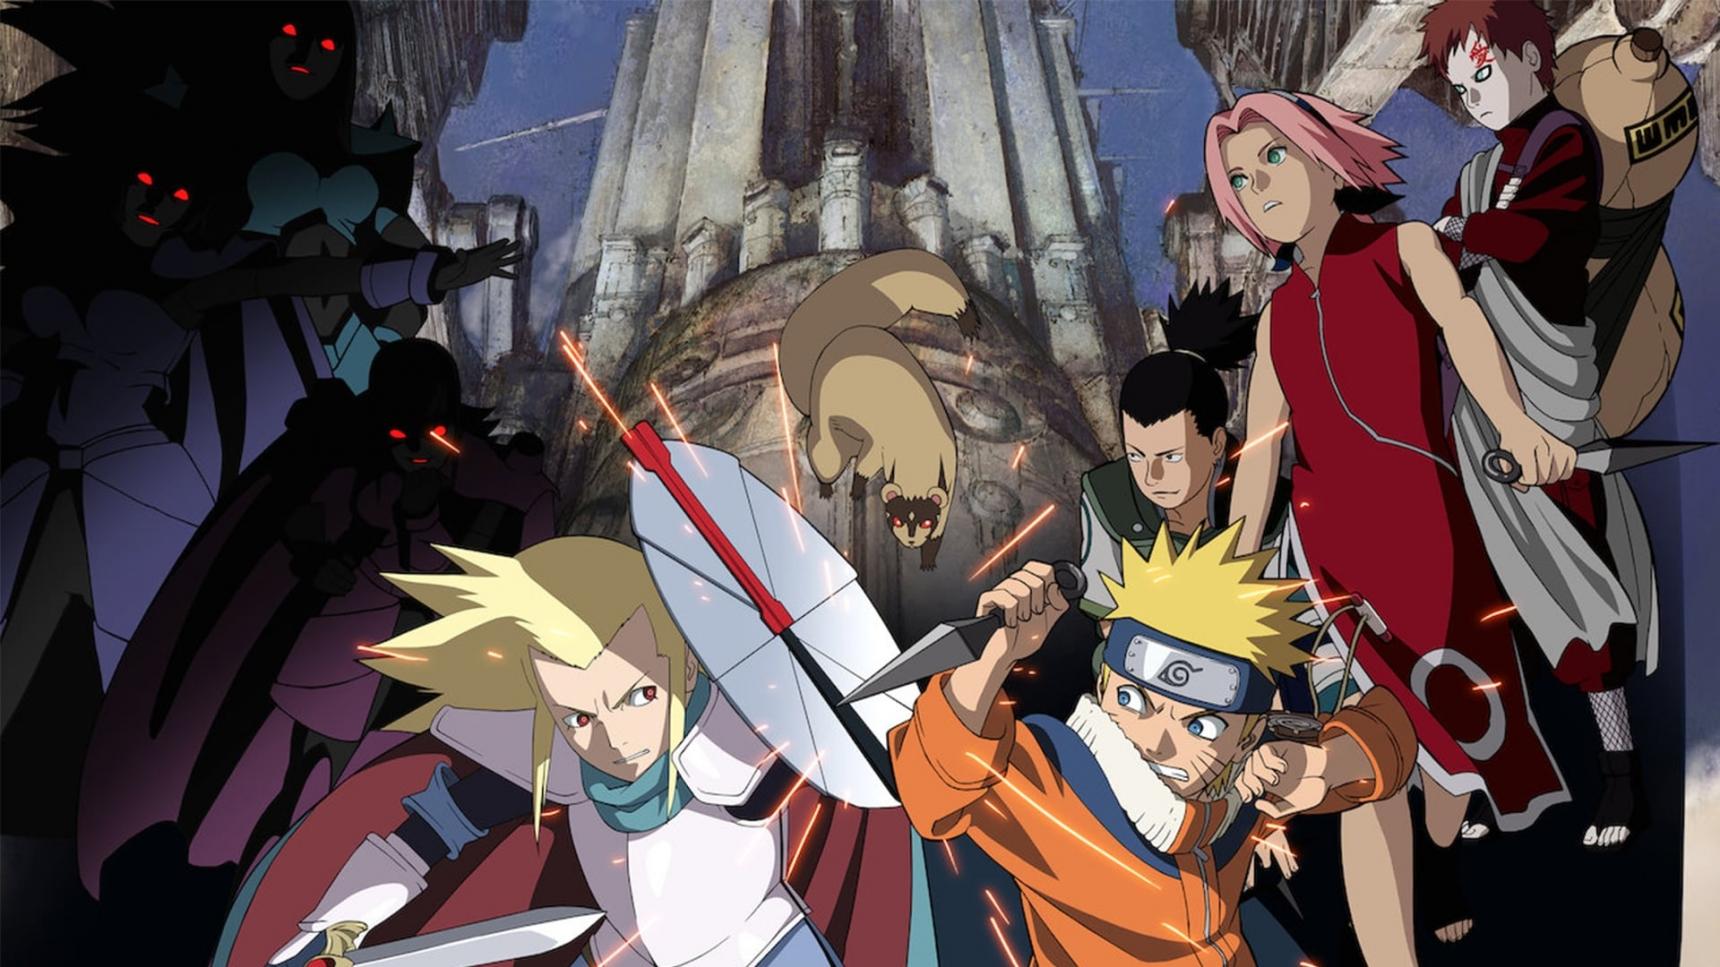 Fondo de pantalla de la película Naruto 2: Las ruinas ilusorias en lo profundo de la tierra en Cliver.tv gratis